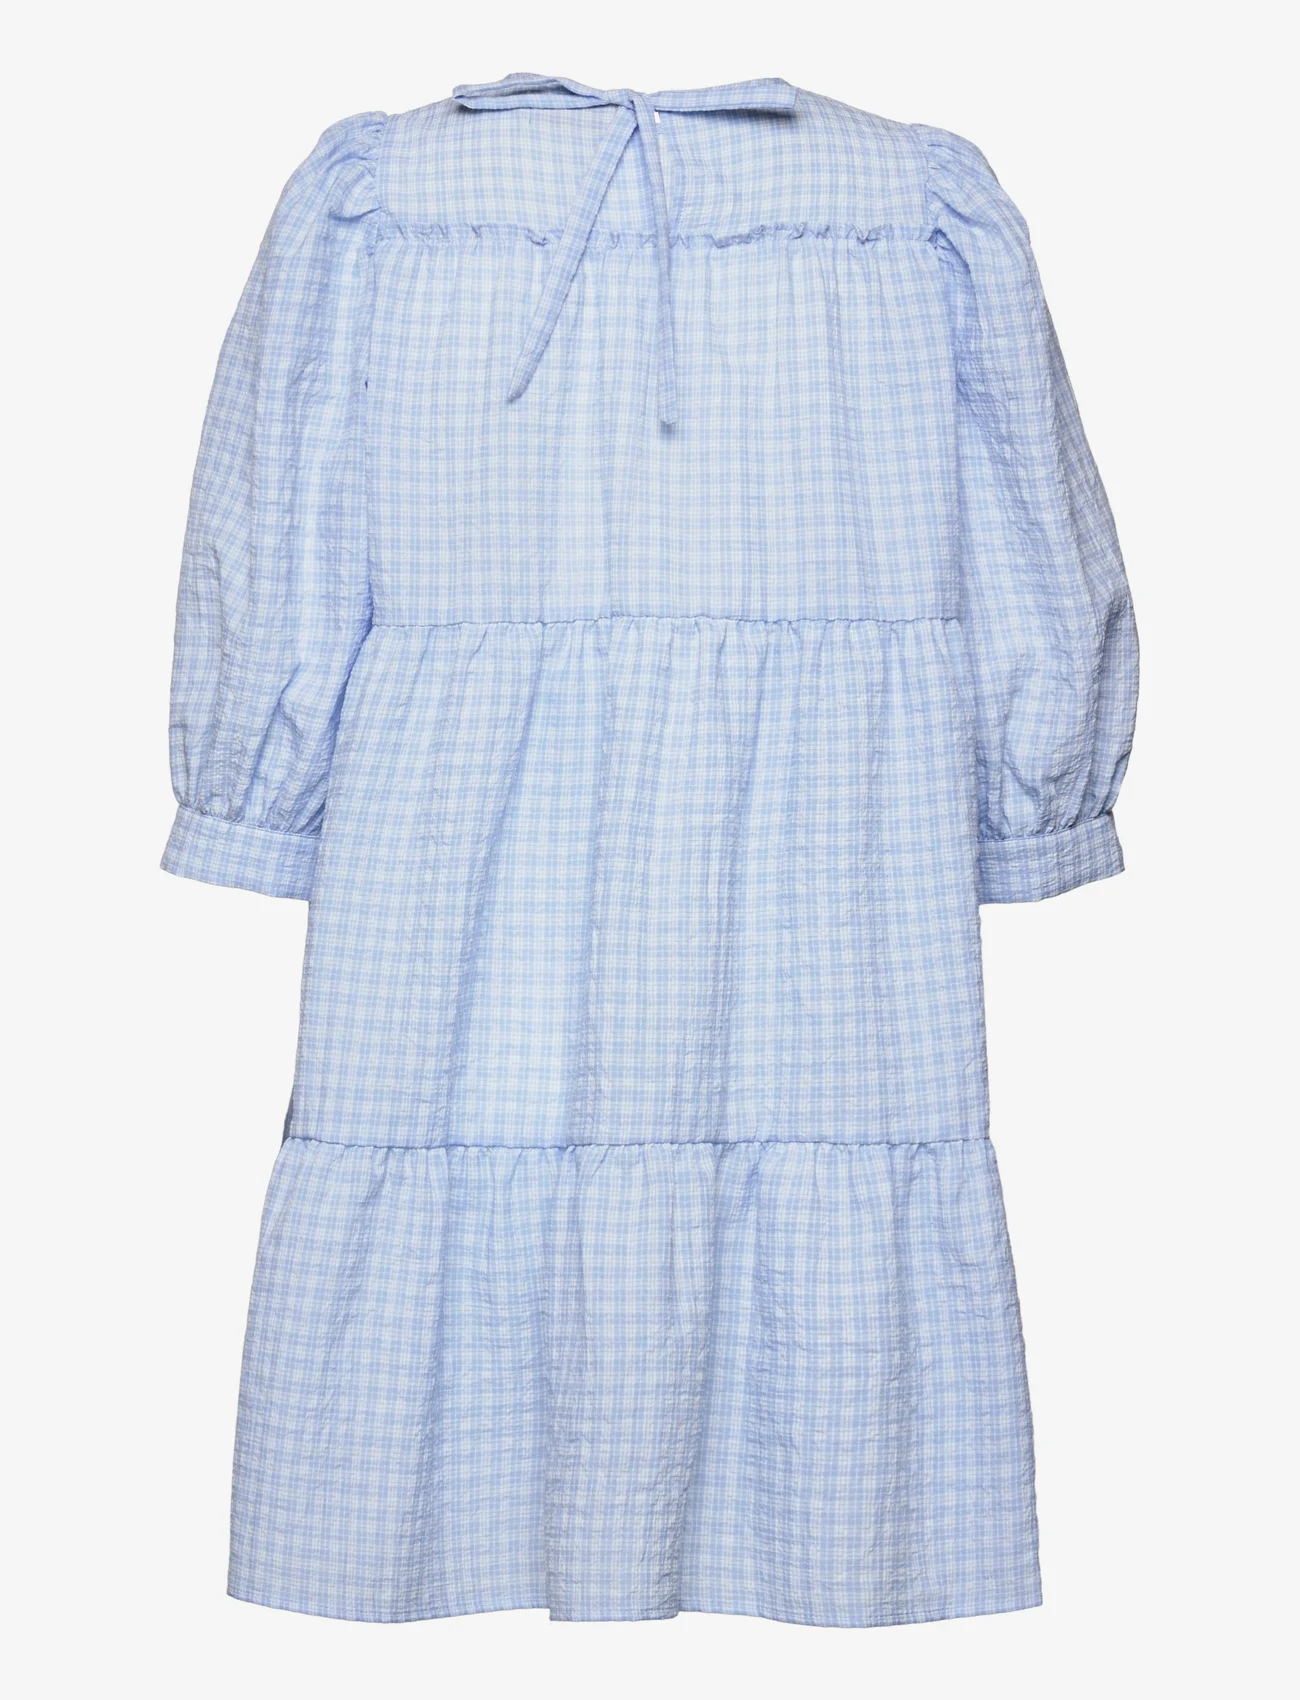 Minus - Rowen kjole - korta klänningar - blue checked - 1